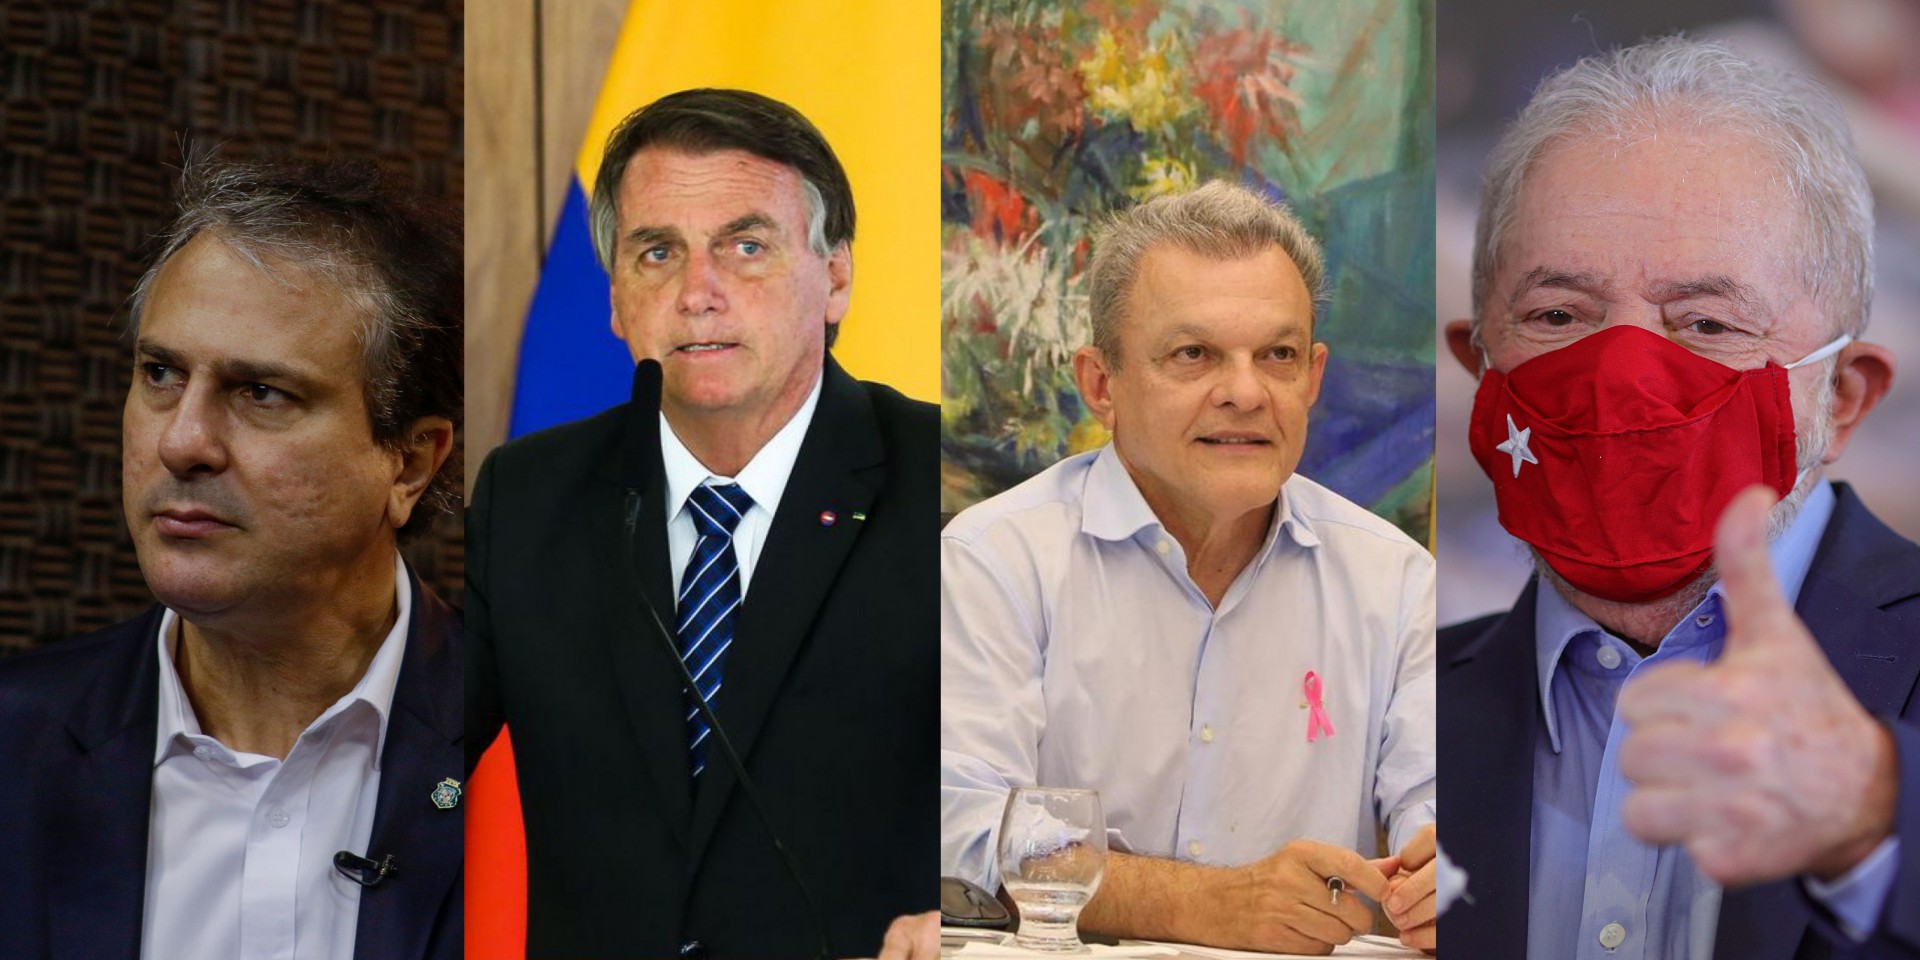 Presidente Jair Bolsonaro e ex-presidente Lula foram pautas no cenário nacional. Sarto e Camilo, chefes do executivo de Fortaleza e do Ceará, respectivamente, foram principais personagens locais. (Foto: O POVO)